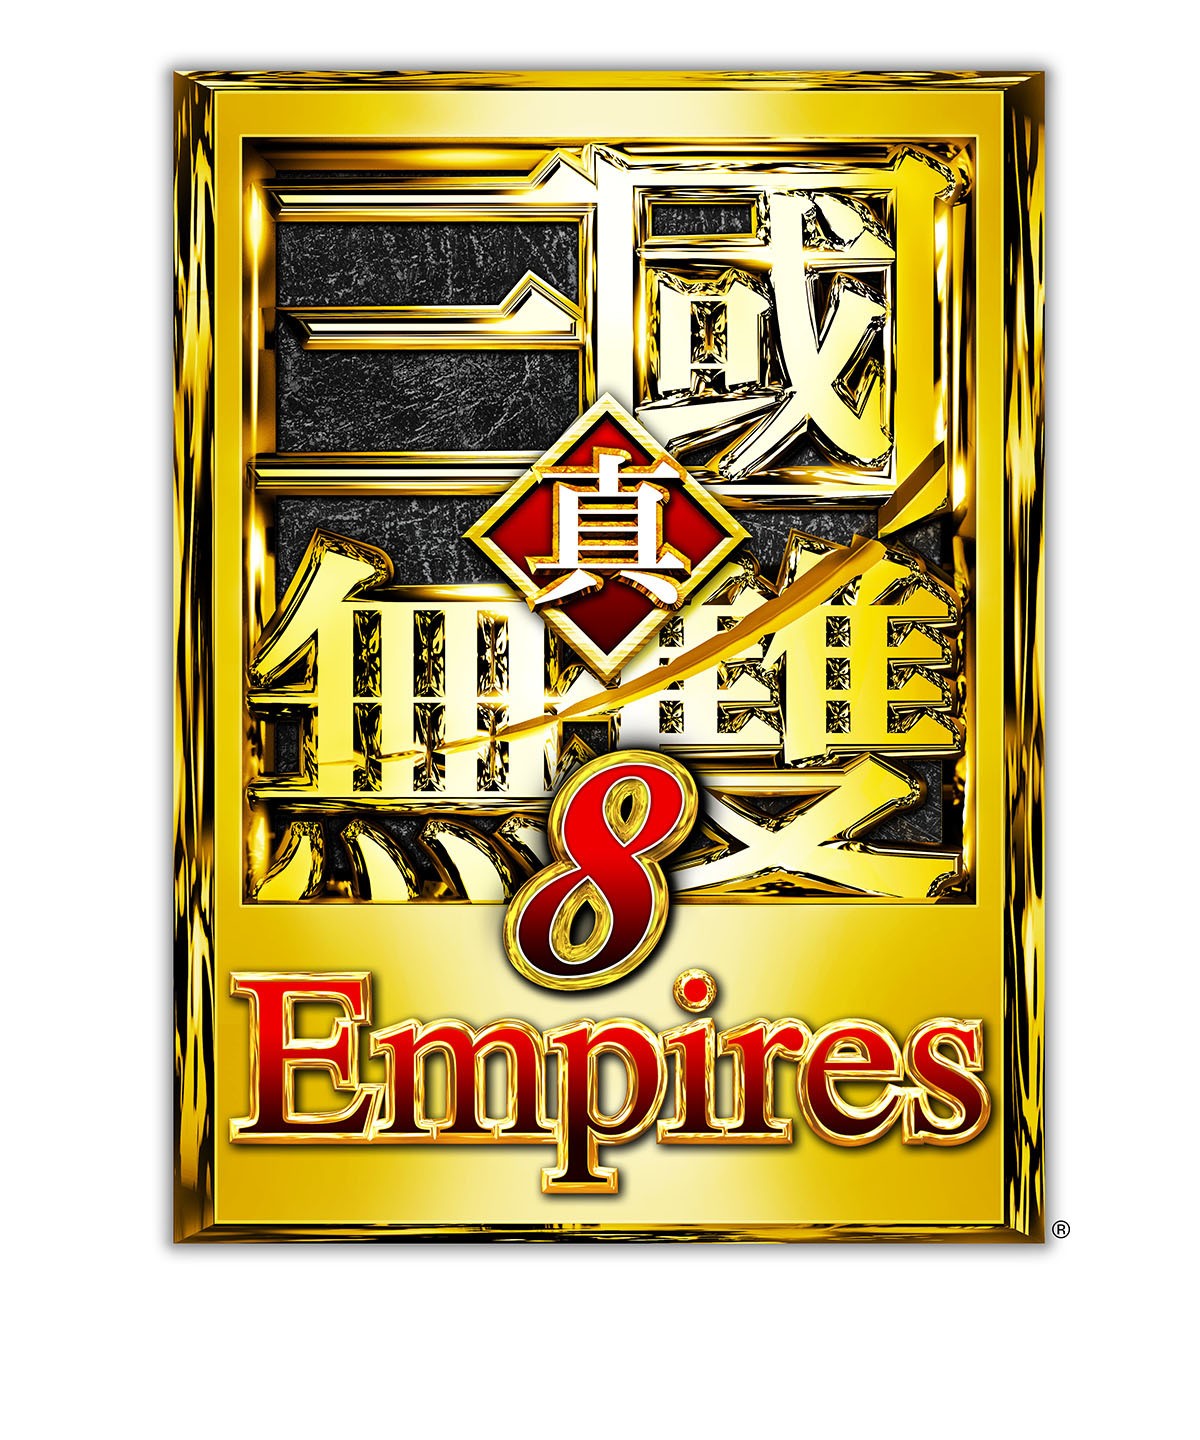 《真‧三國無雙 8 Empires》公開最新宣傳影片及早期購入特典「趙雲套組」